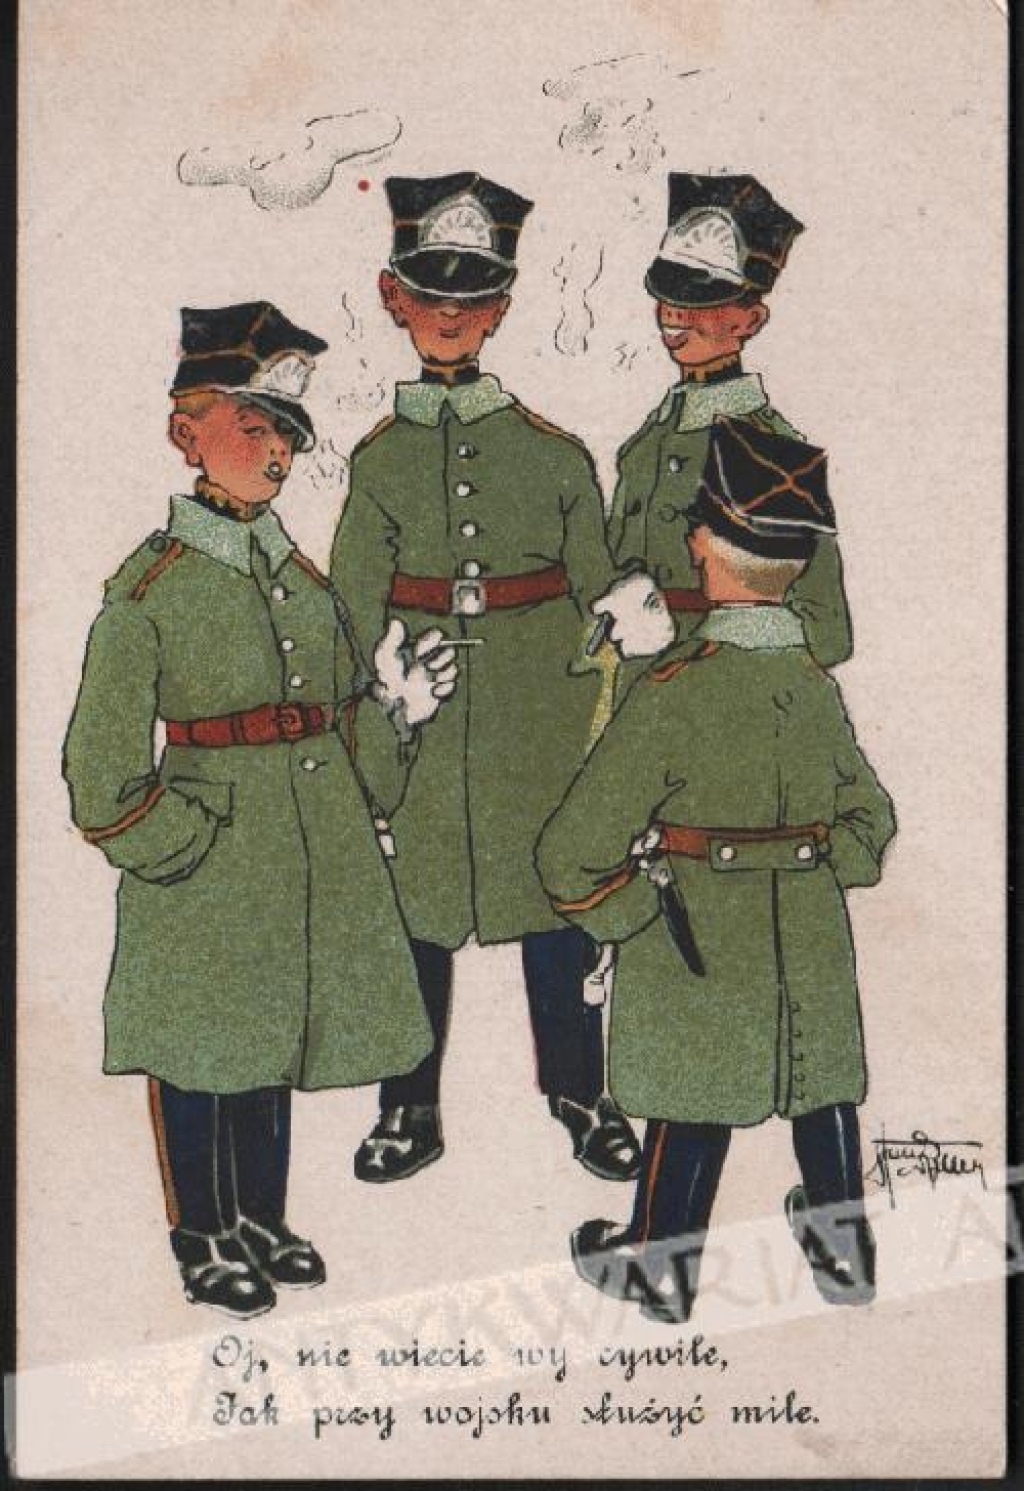 [pocztówka, ok. 1920] Oj, nie wiecie wy cywile, jak przy wojsku służyć mile.